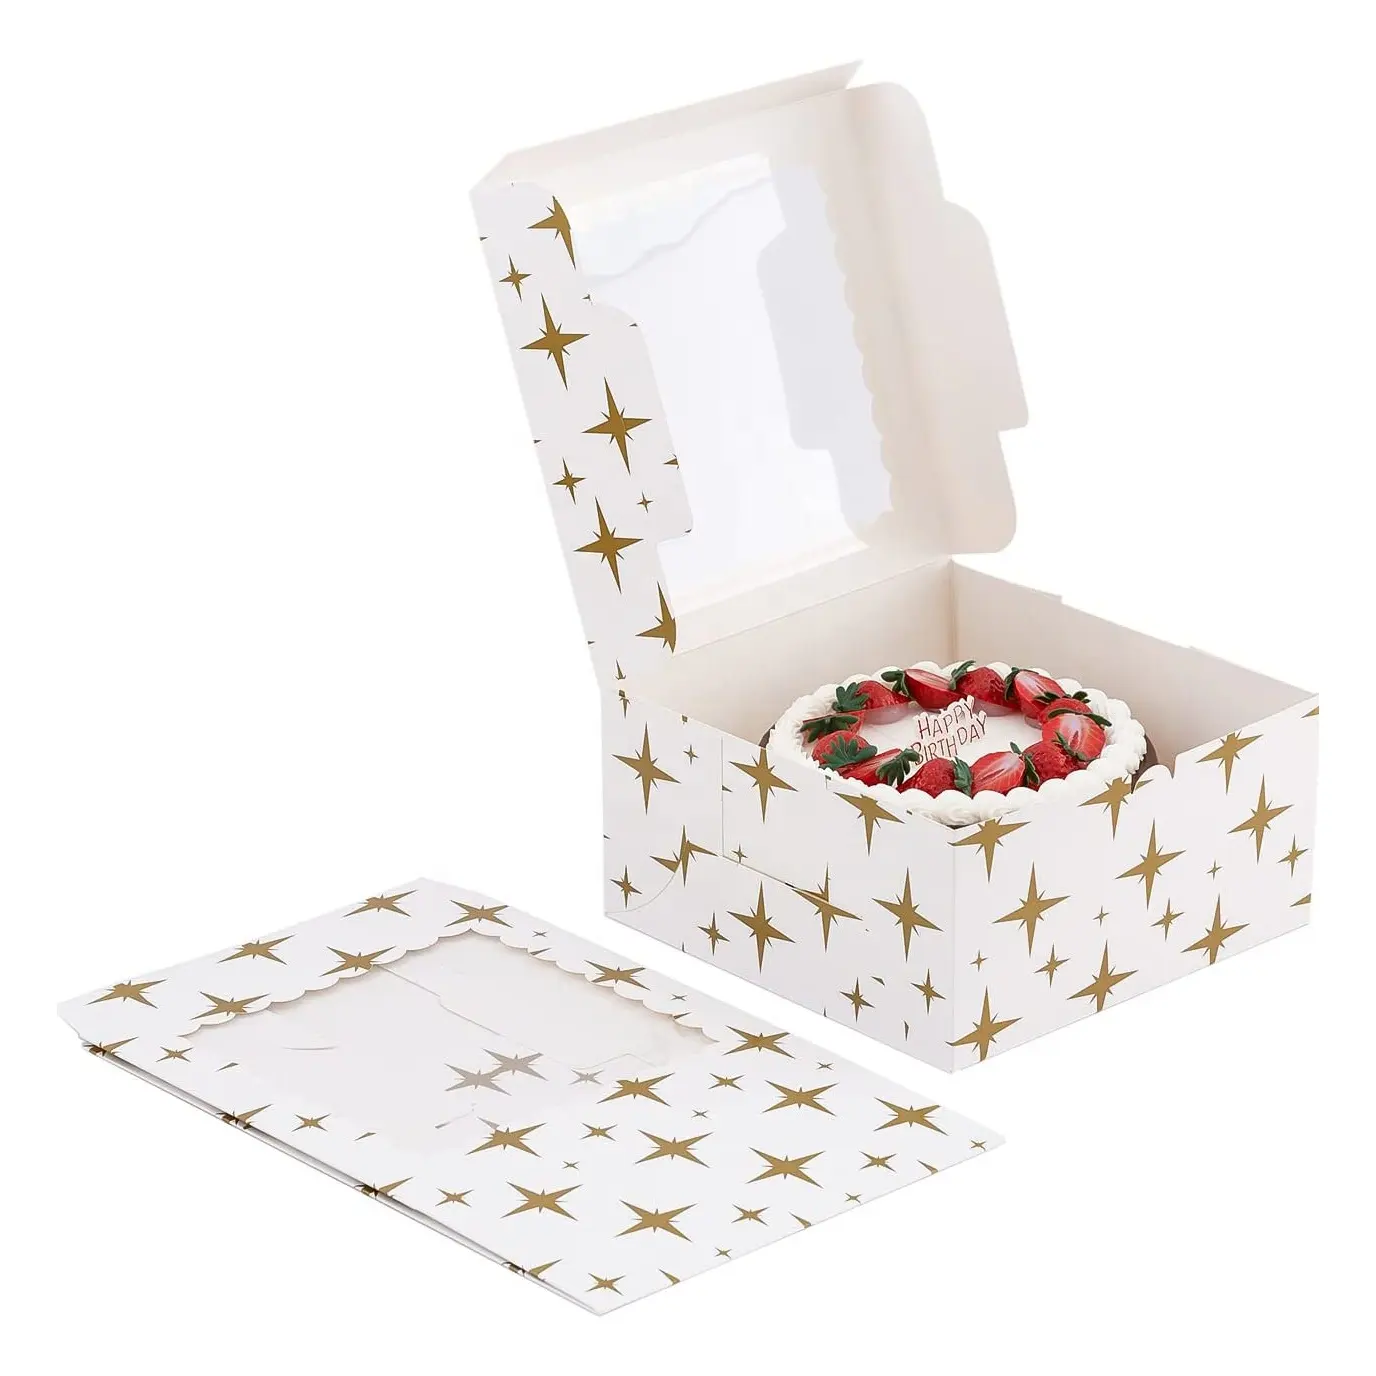 スクエア46 810インチウエディングケーキボックスホワイトペーパーフラットパックベーカリーボックスカップケーキ用透明ウィンドウペストリーハットボックス付き